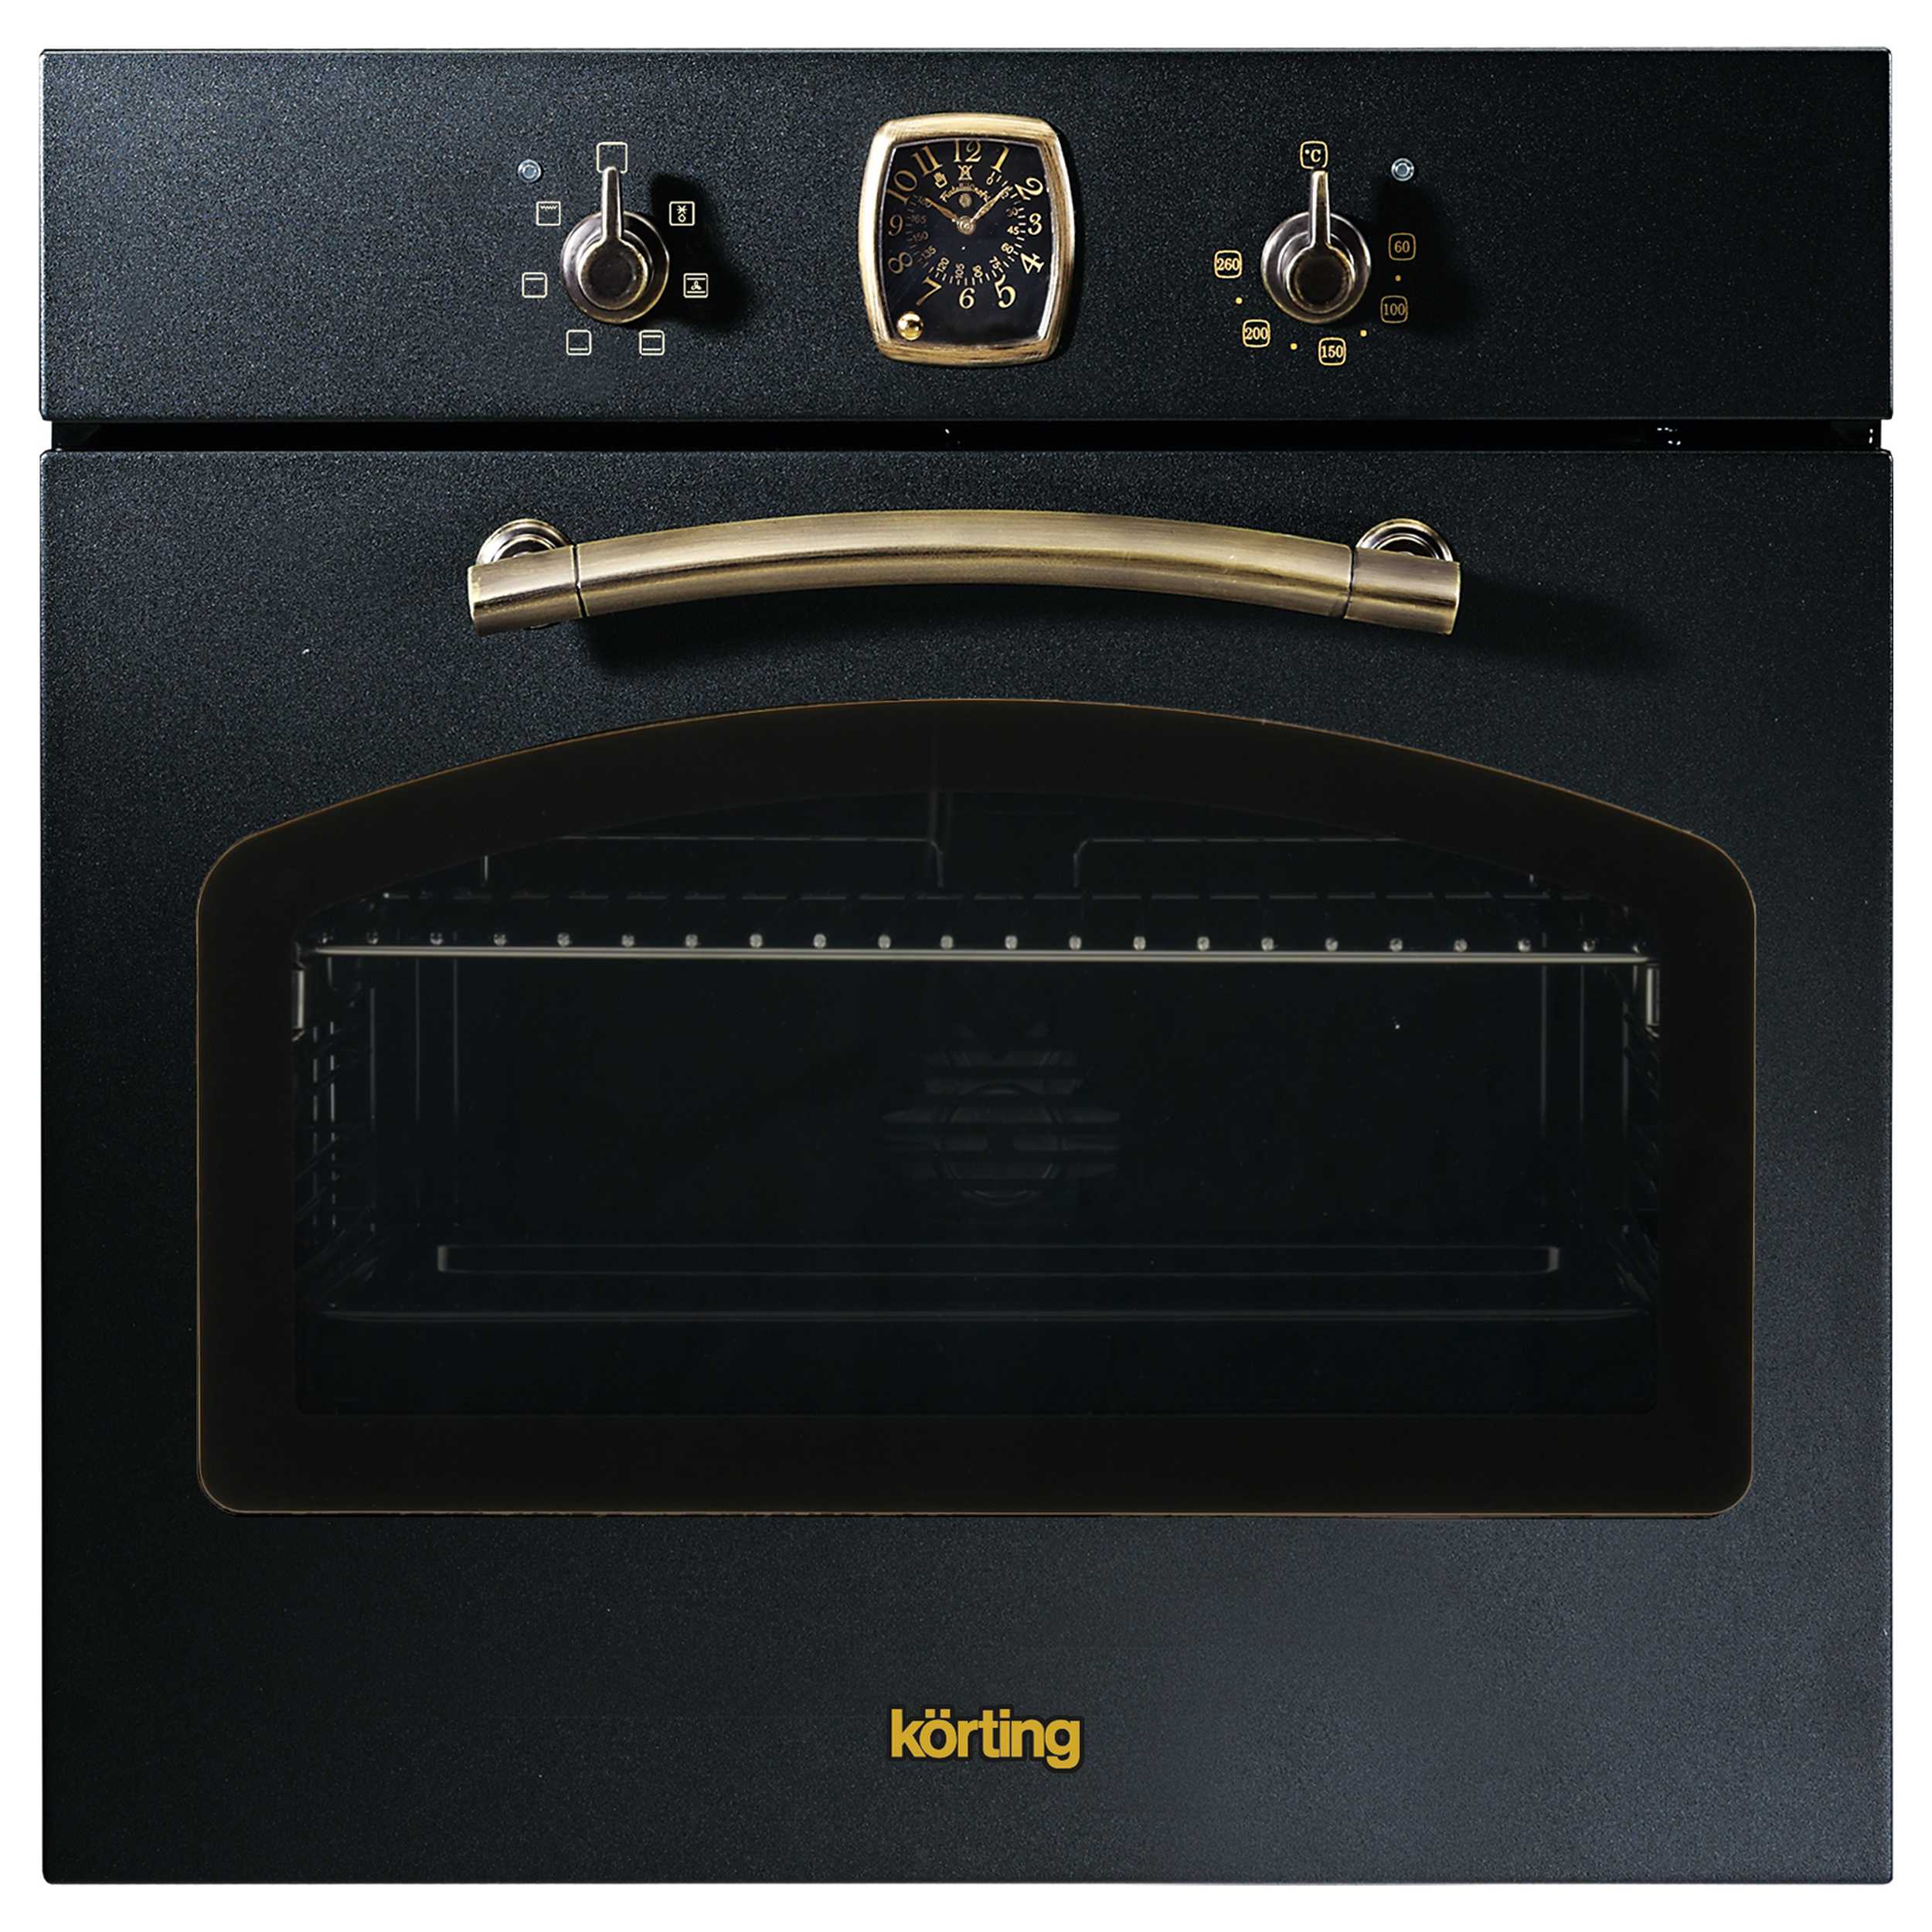 Встраиваемый электрический духовой шкаф Korting OKB 460 RN черный, золотистый смарт часы amazfit t rex 2 a2170 1 39 золотистый